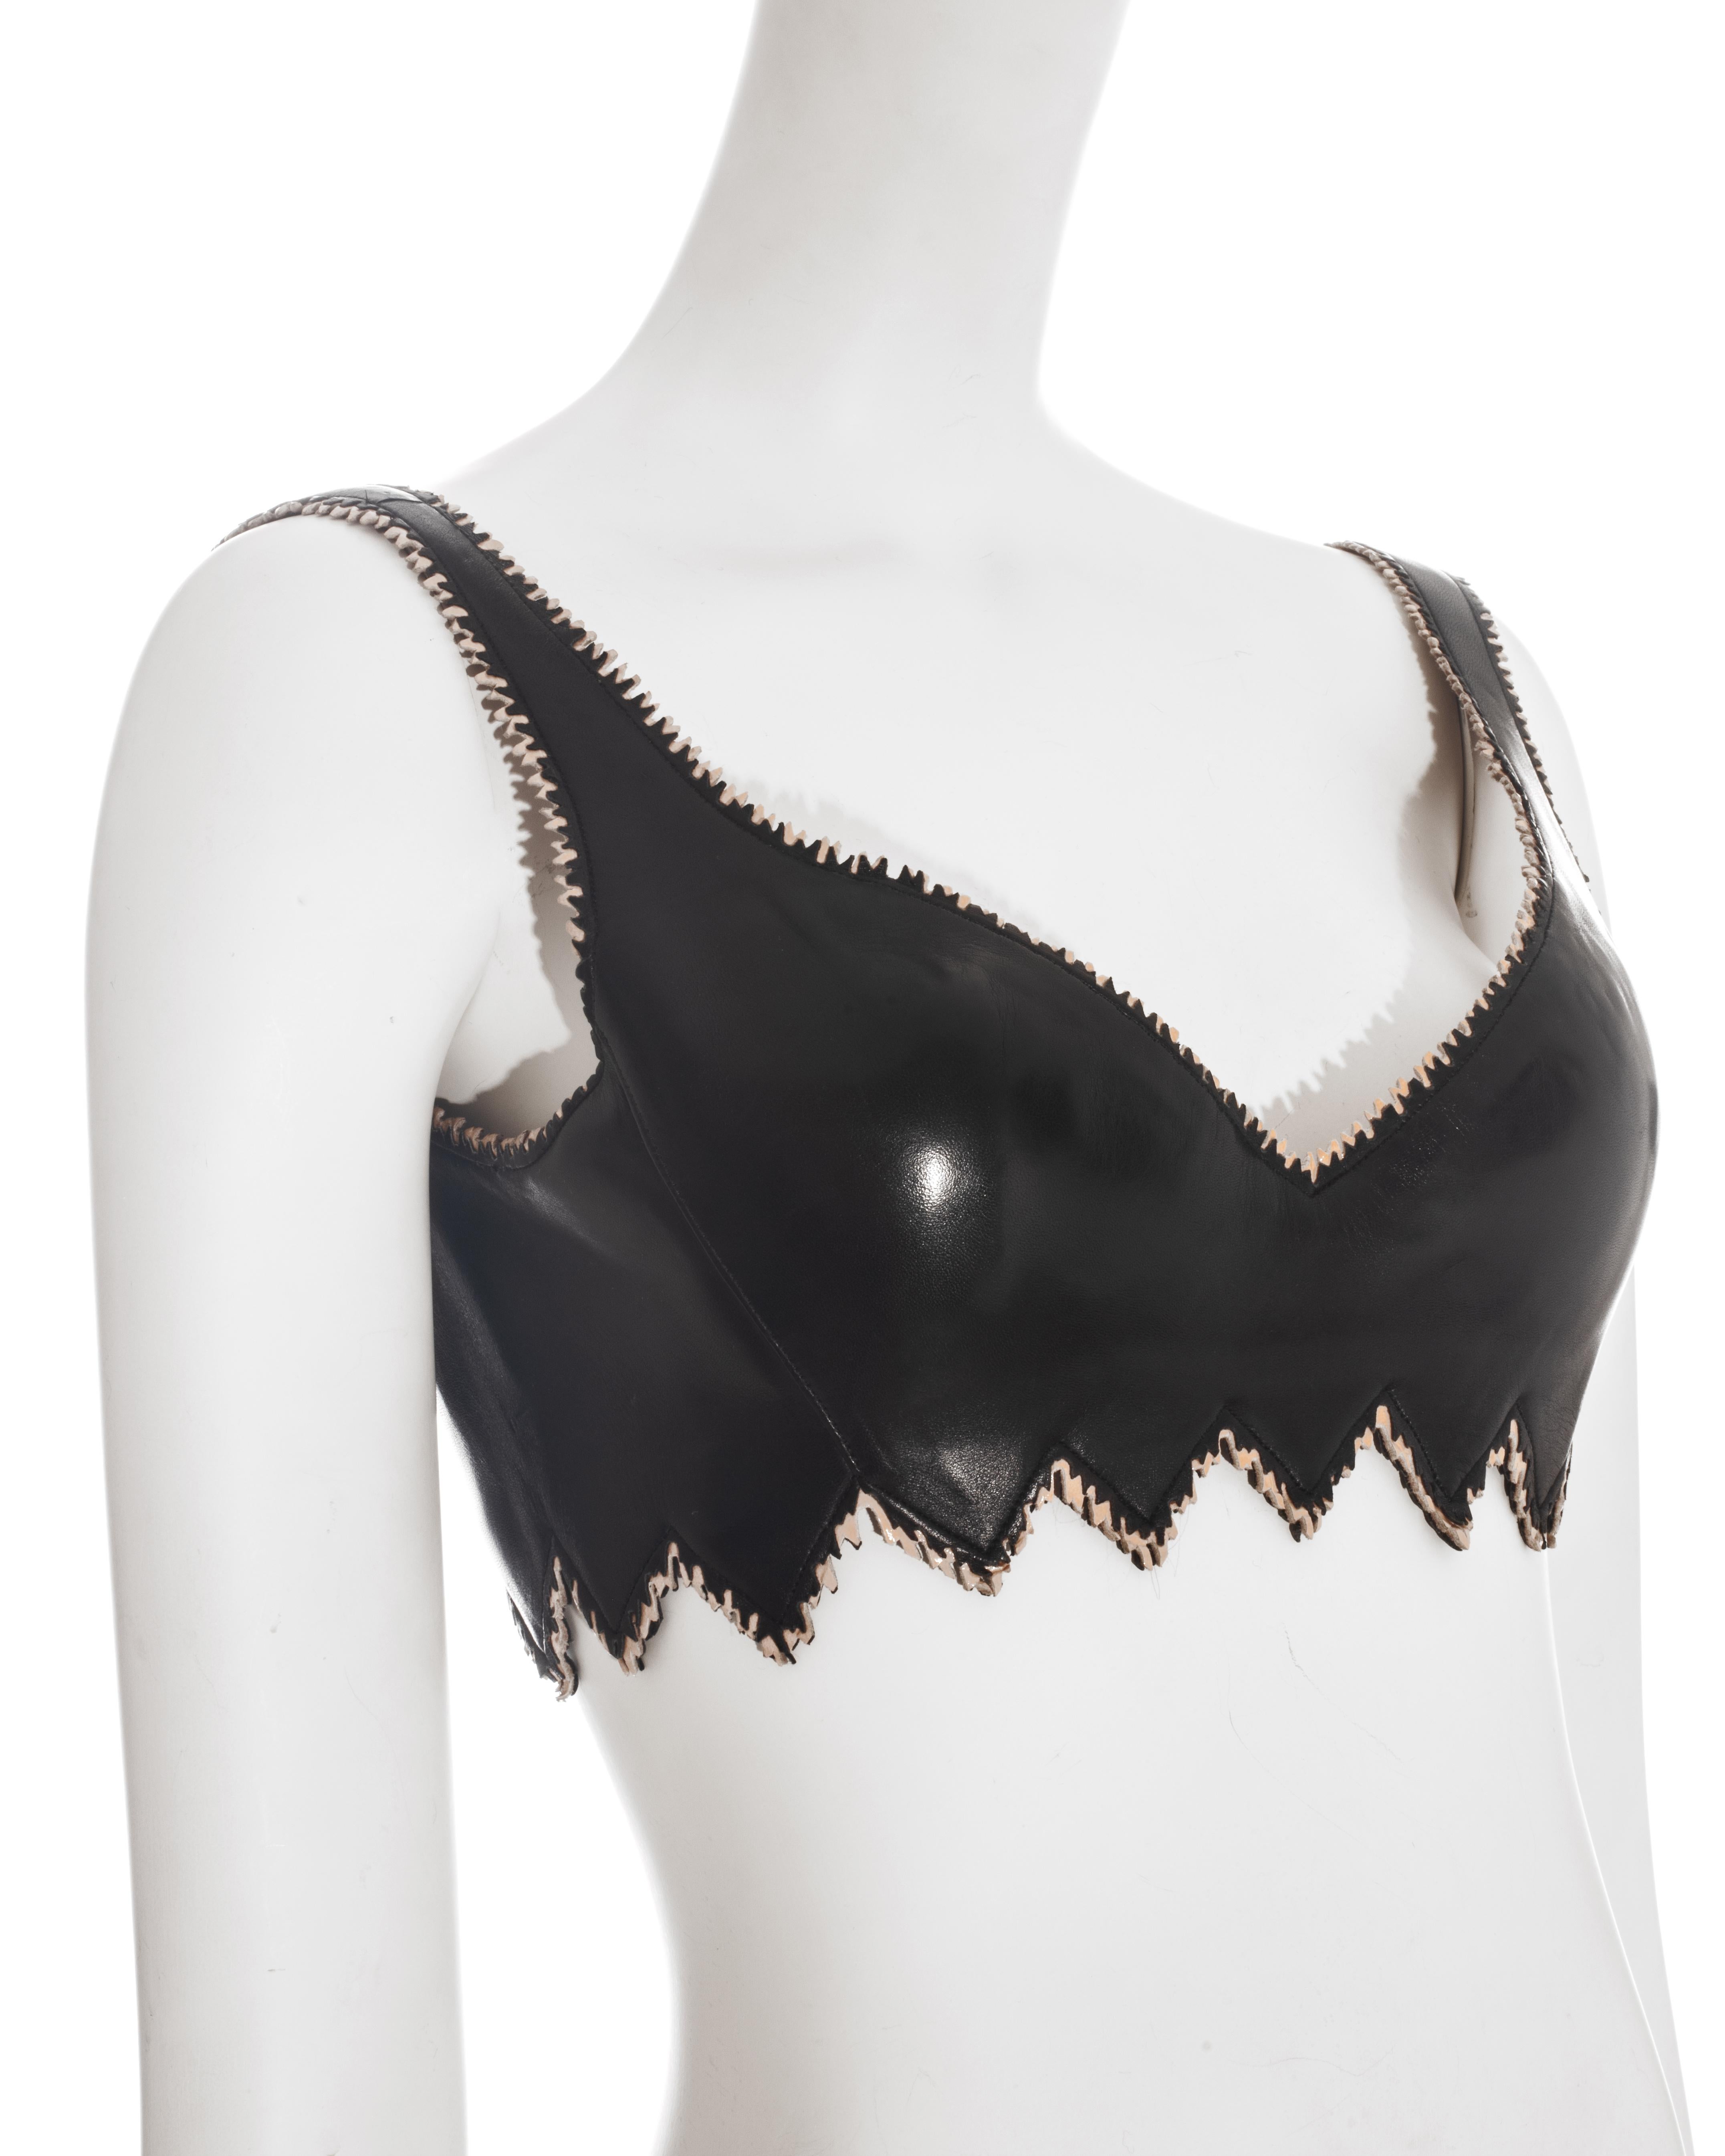 leather bra corset